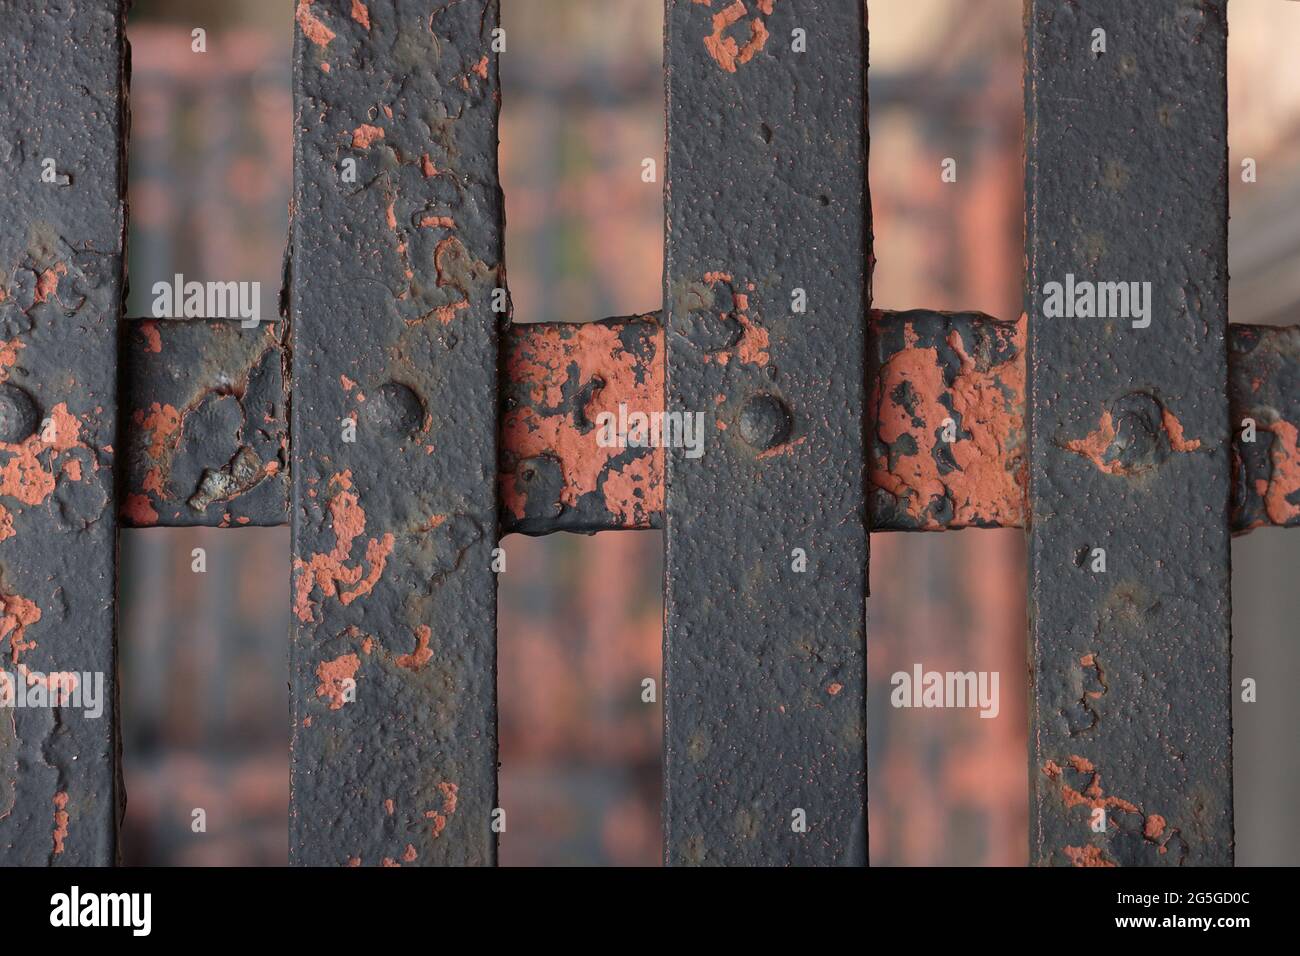 Verrostete, abblätternde Farbe auf überkreuzenden Metallstangen mit Schrauben bilden einen düsteren, urbanen Hintergrund in tiefbrauner, oranger, verbrannter Umbra, Terrakotta-Erde Stockfoto